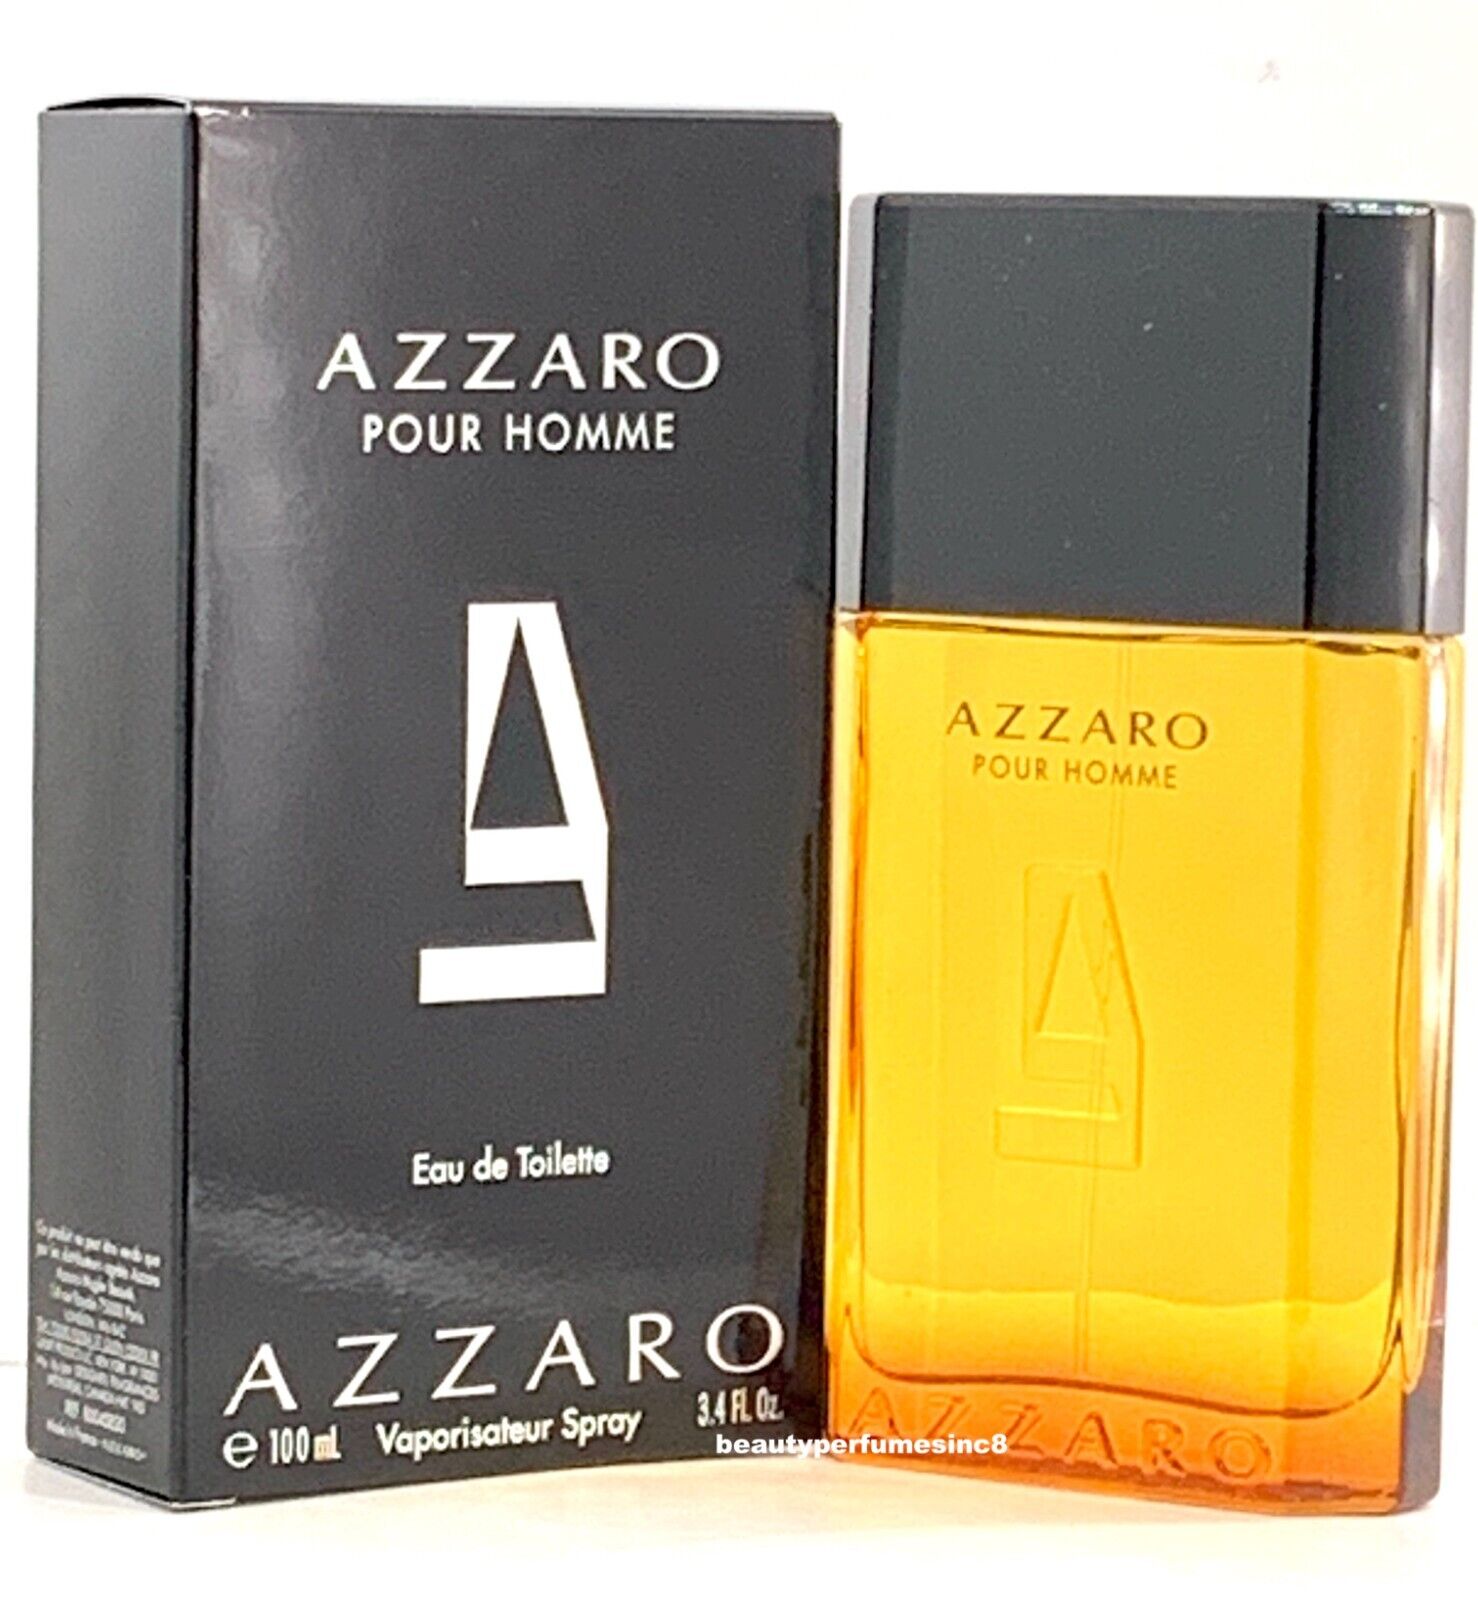 Azzaro Pour Homme 3.4 oz Eau de Toilette Spray, Perfume for Men New in Box Azzaro AZZ1881 - фотография #3